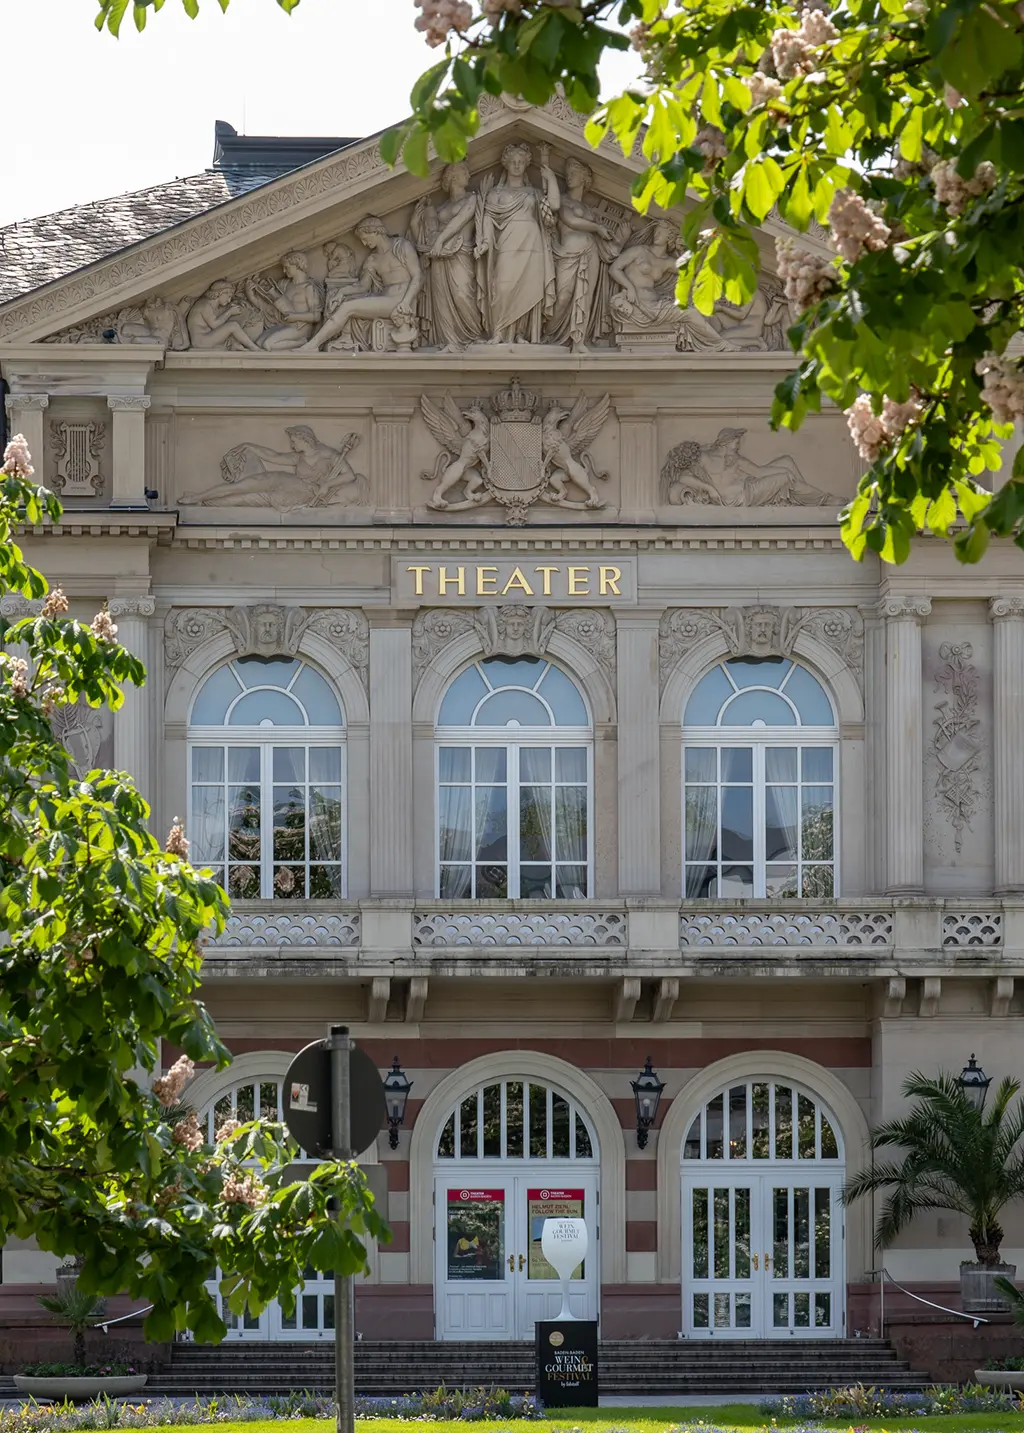 Visiter Baden-Baden en 2 jours. Que voir, que faire ?